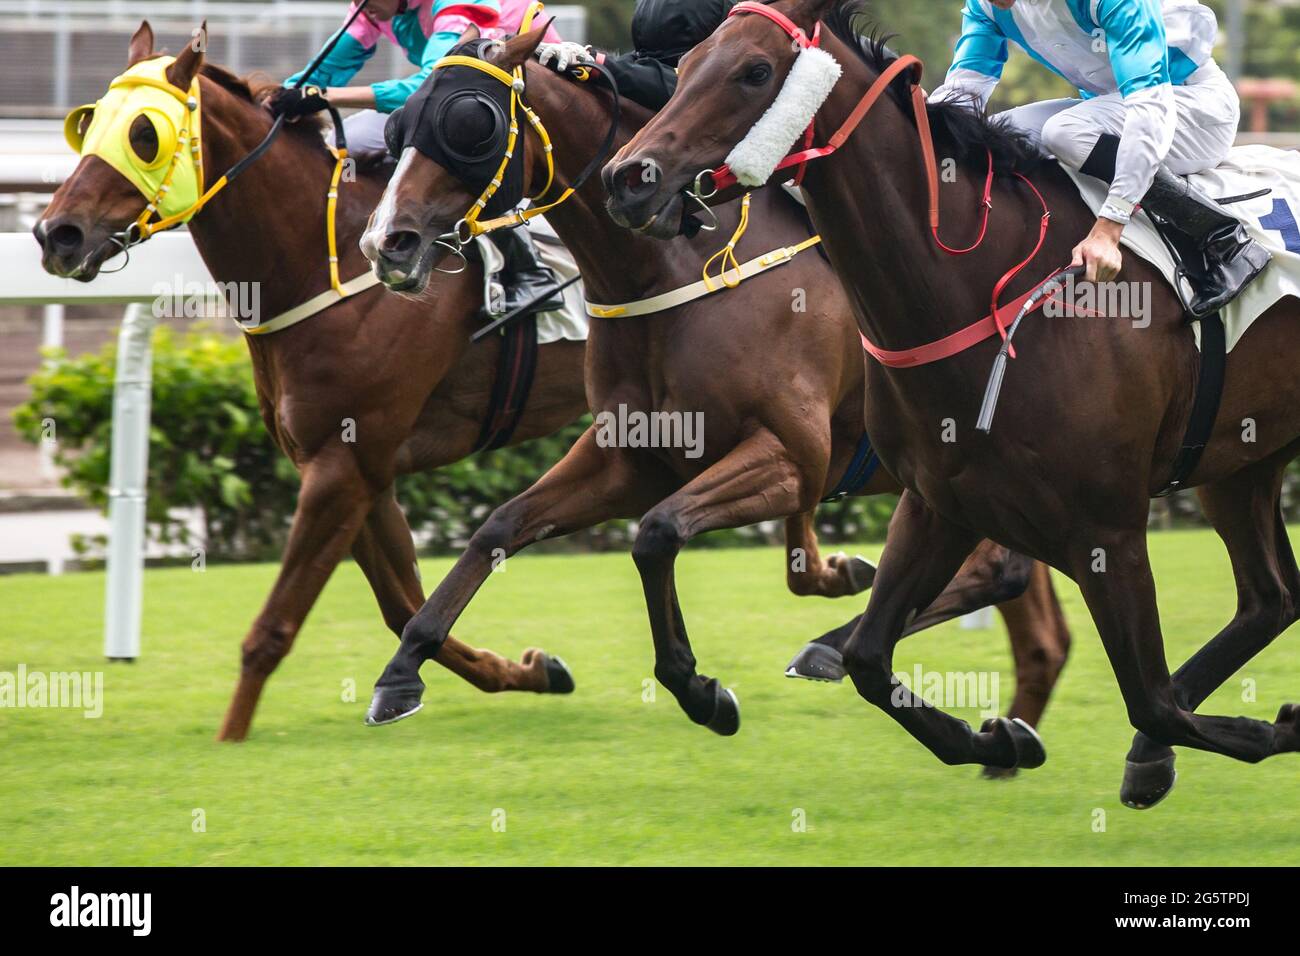 Fotografia a tema di corse di cavalli. Cavalli che corrono sulla pista da corsa. Foto Stock